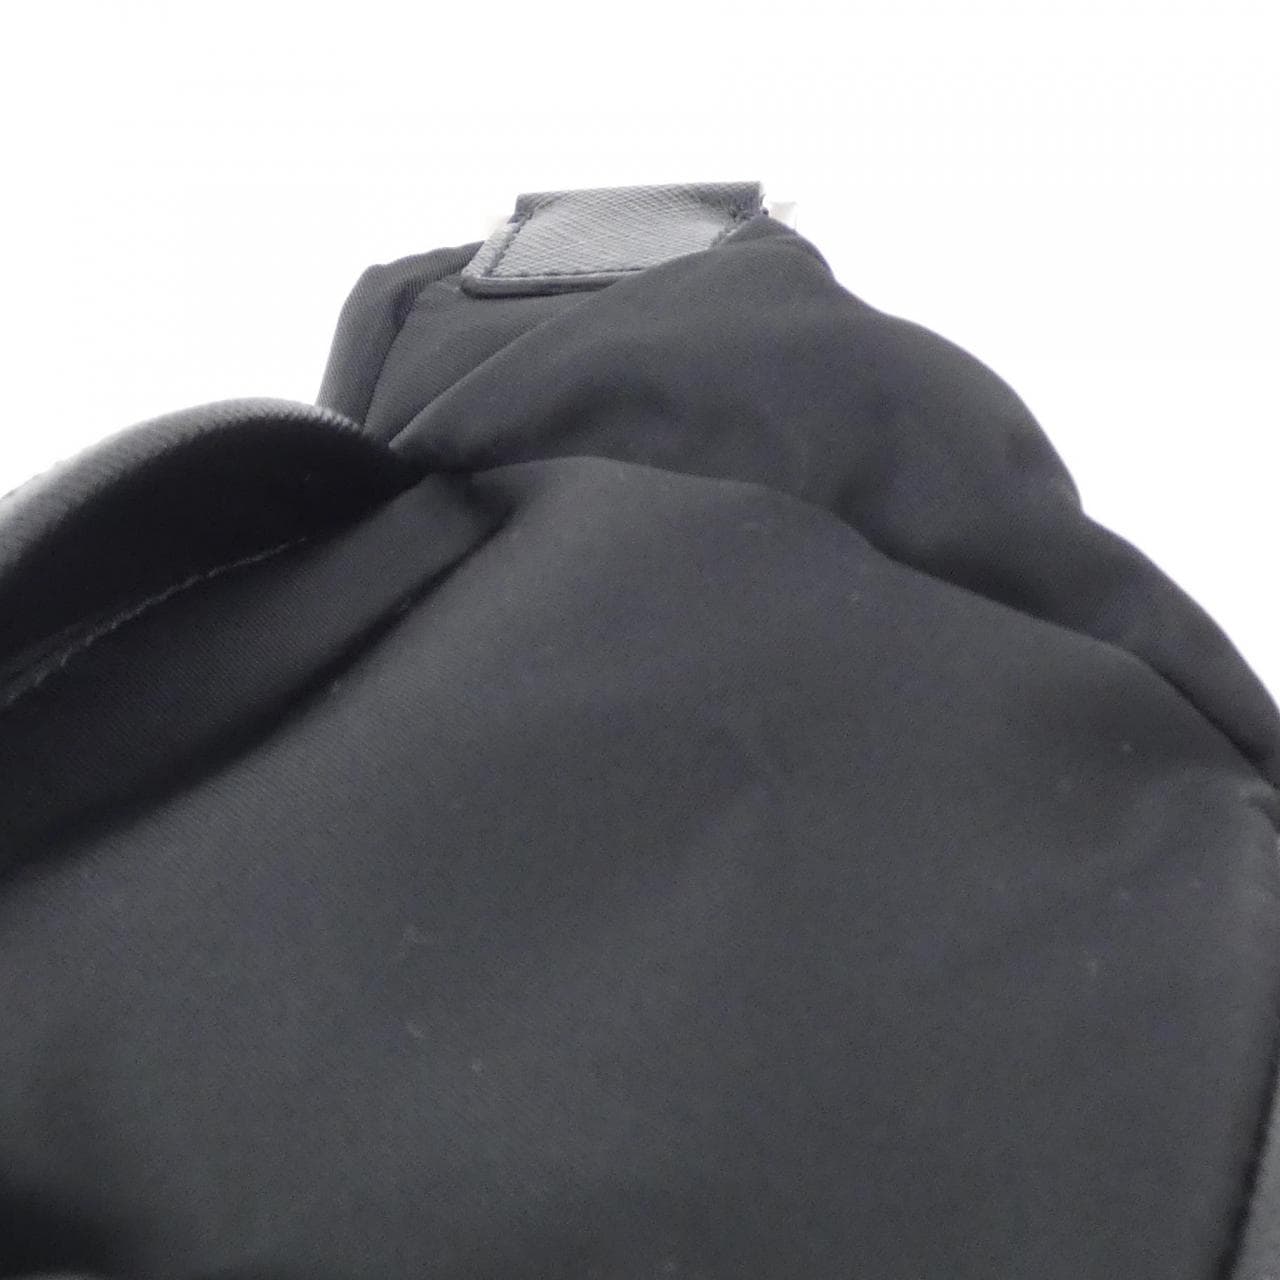 prada 2VH171 shoulder bag